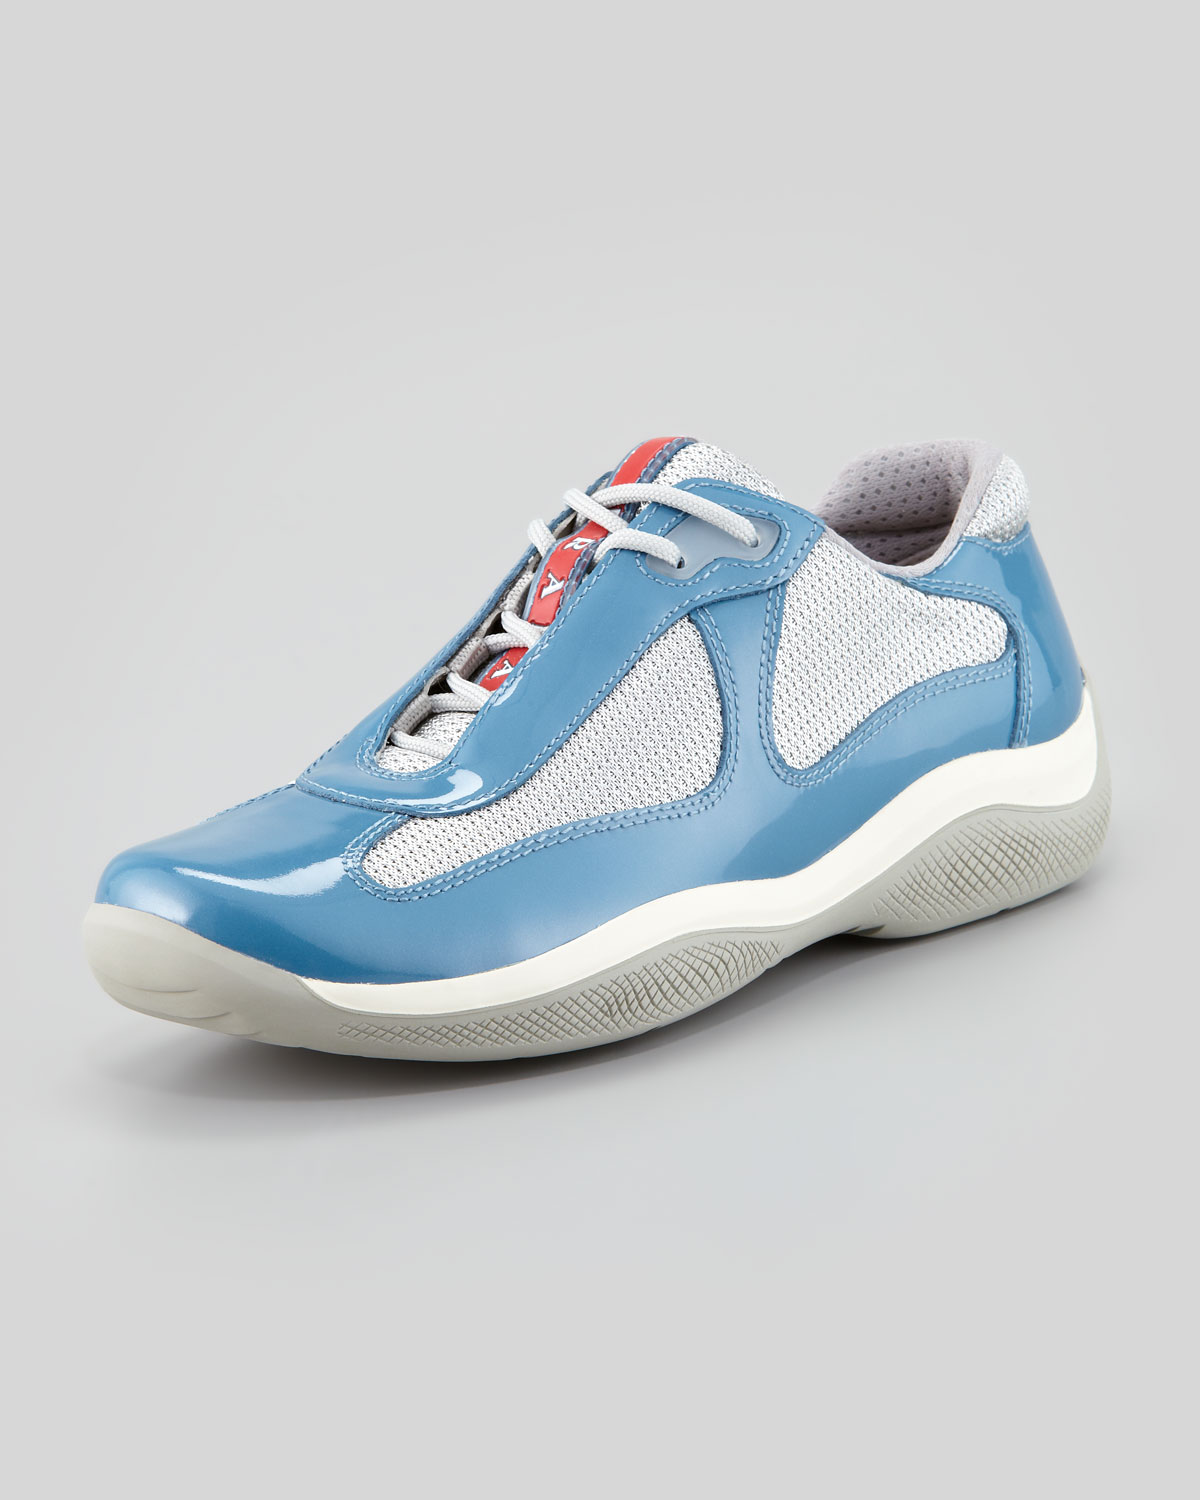 Prada Americas Cup Sneaker in Blue (periwinkle blue) | Lyst